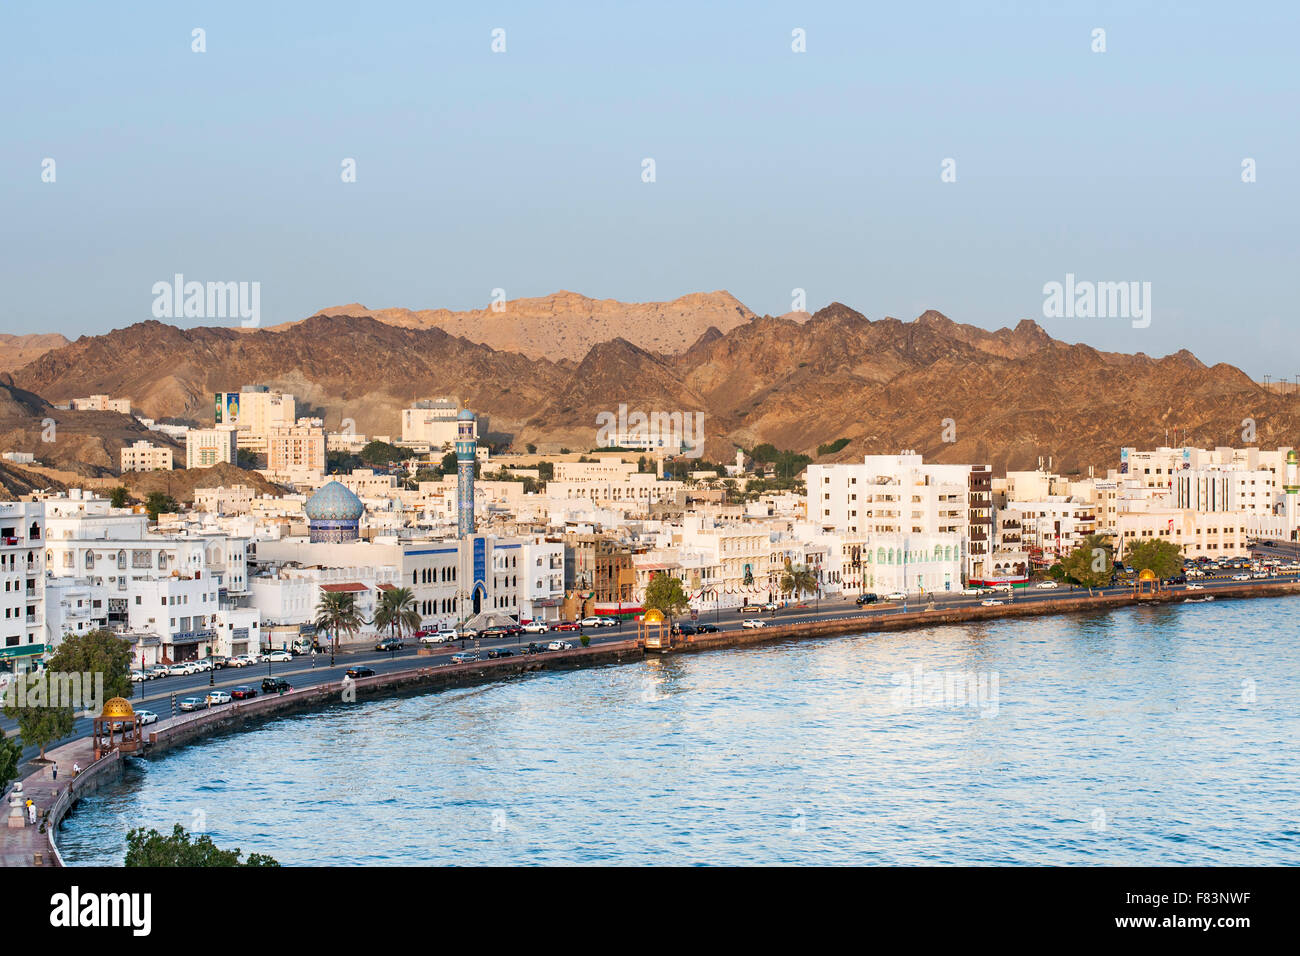 Der Stadtteil Mutrah und die umliegenden Berge in Muscat, der Hauptstadt des Sultanats Oman. Stockfoto